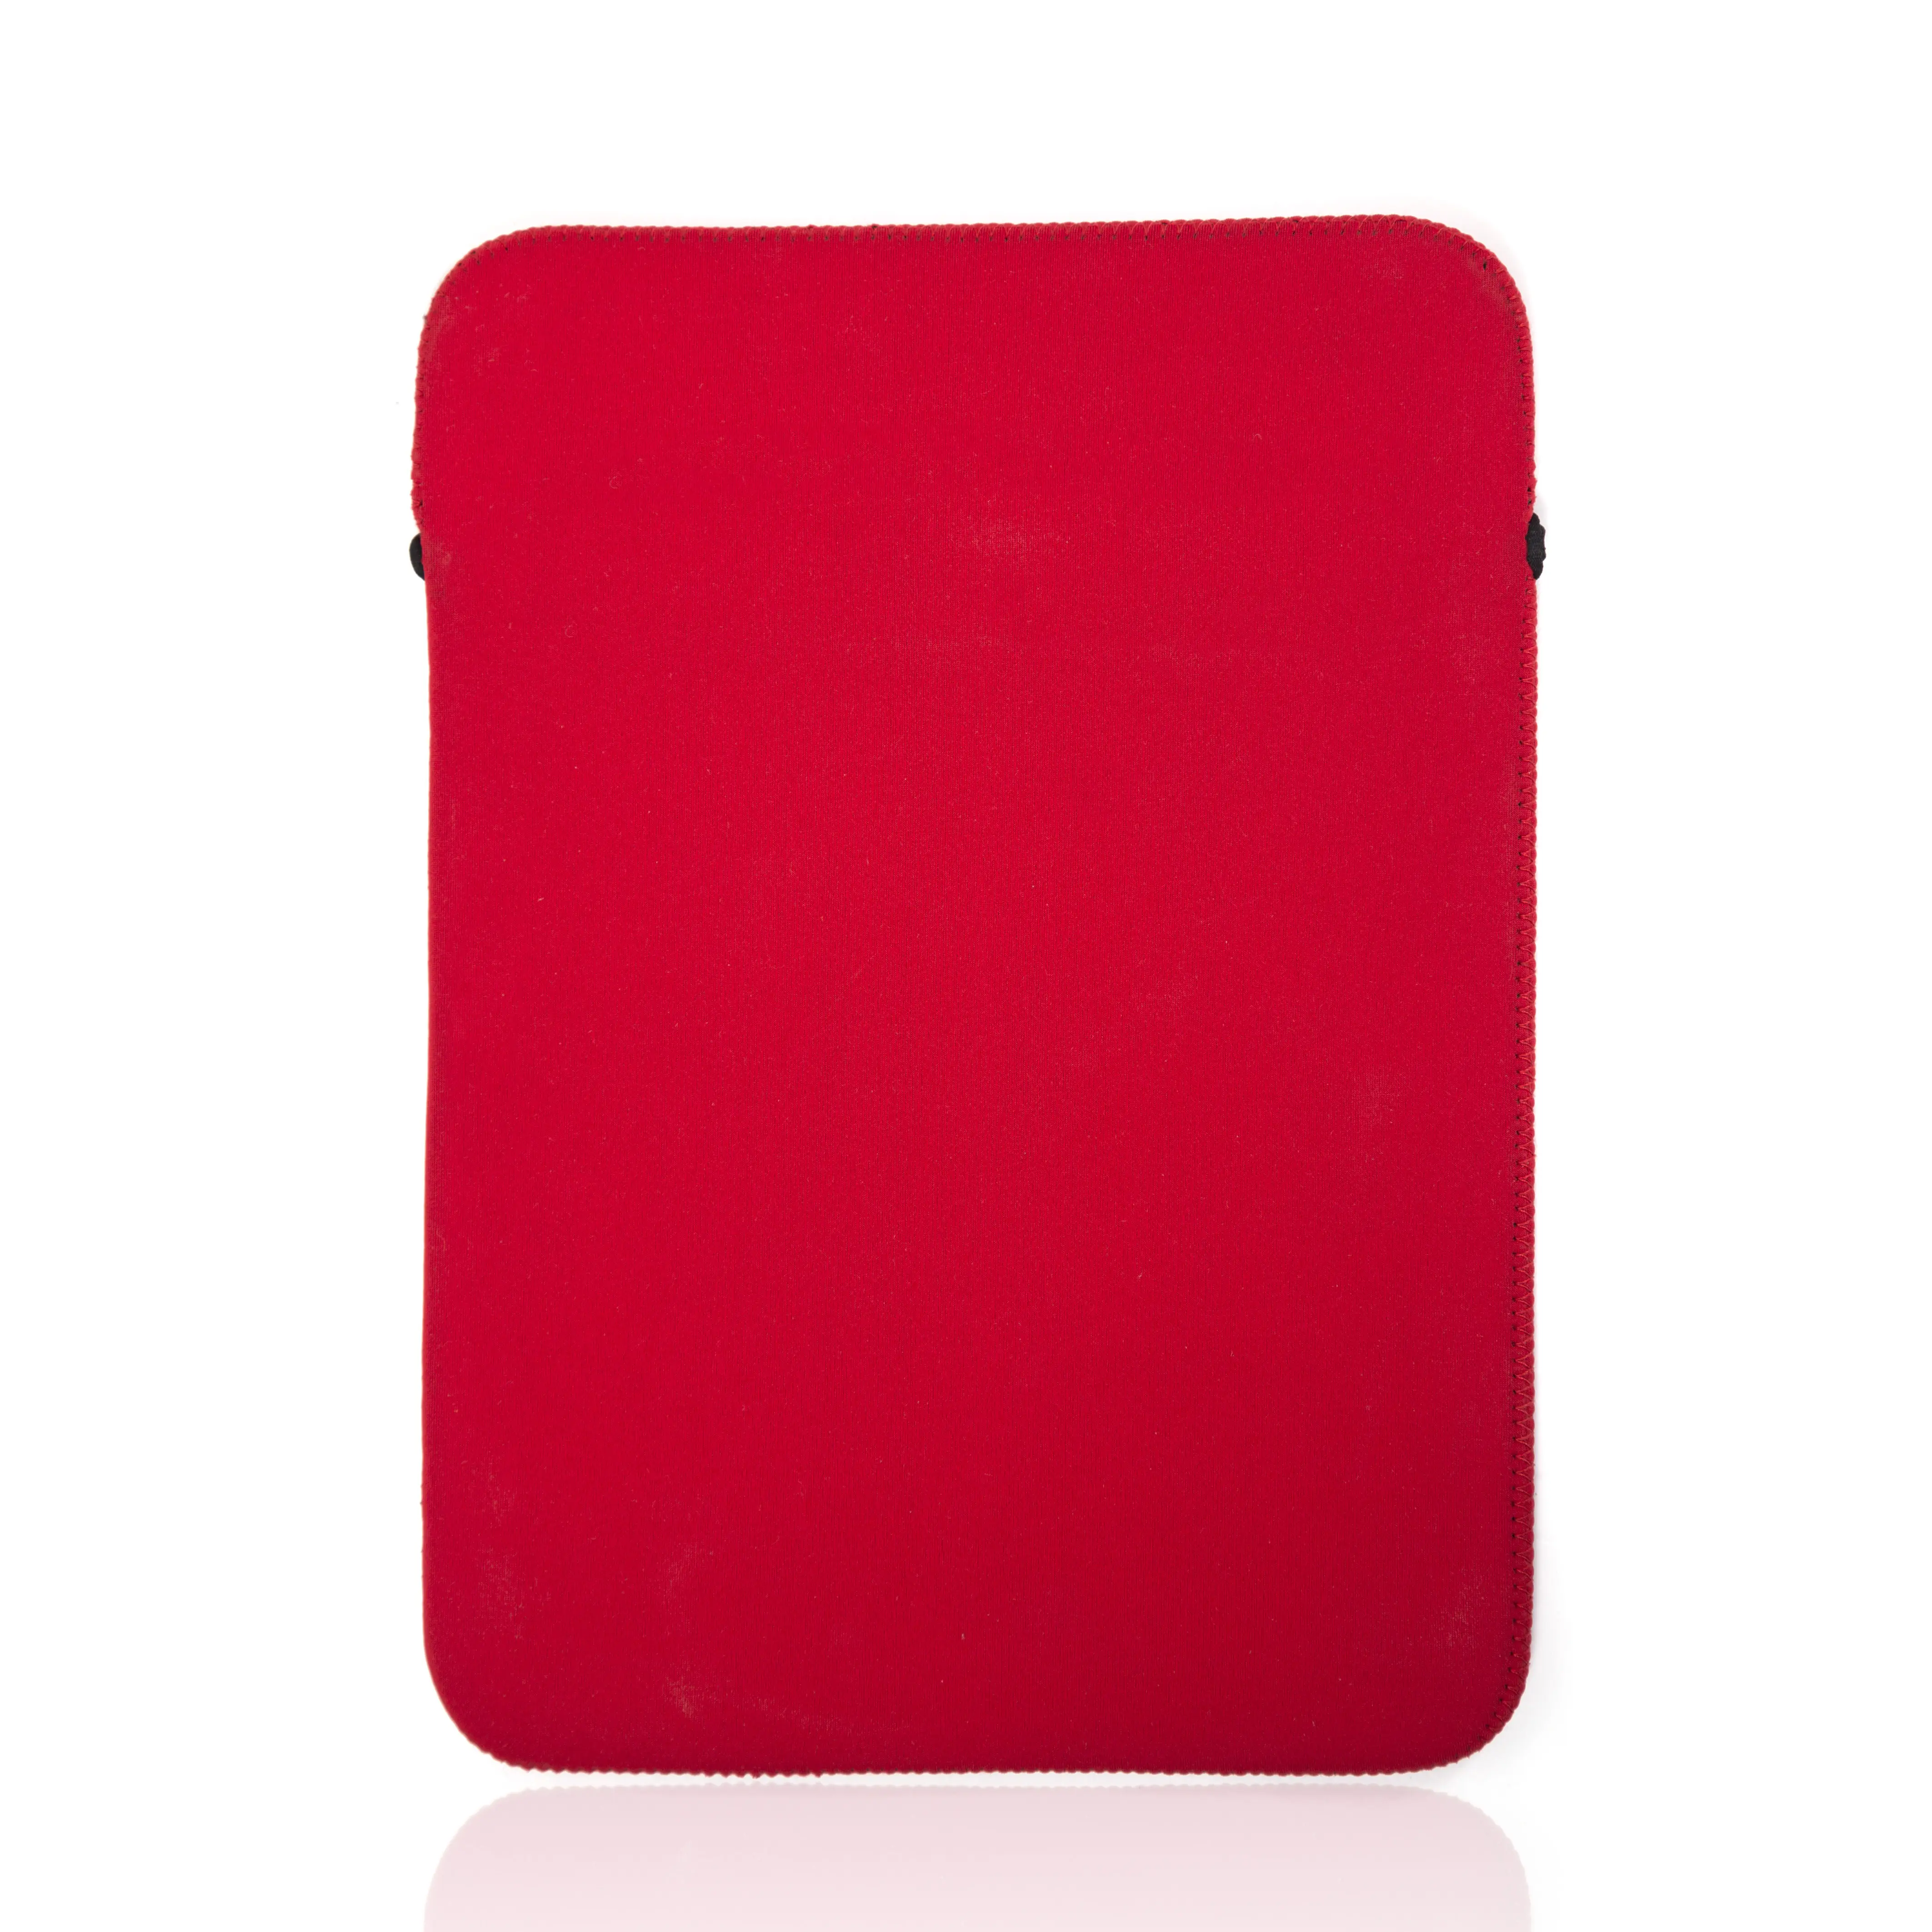 Hochwertige, maßge schneiderte Reise-Laptop tasche mit Neopren-Ärmel tasche für die werkseitig hergestellte iPad-Tasche für Handelsmarken